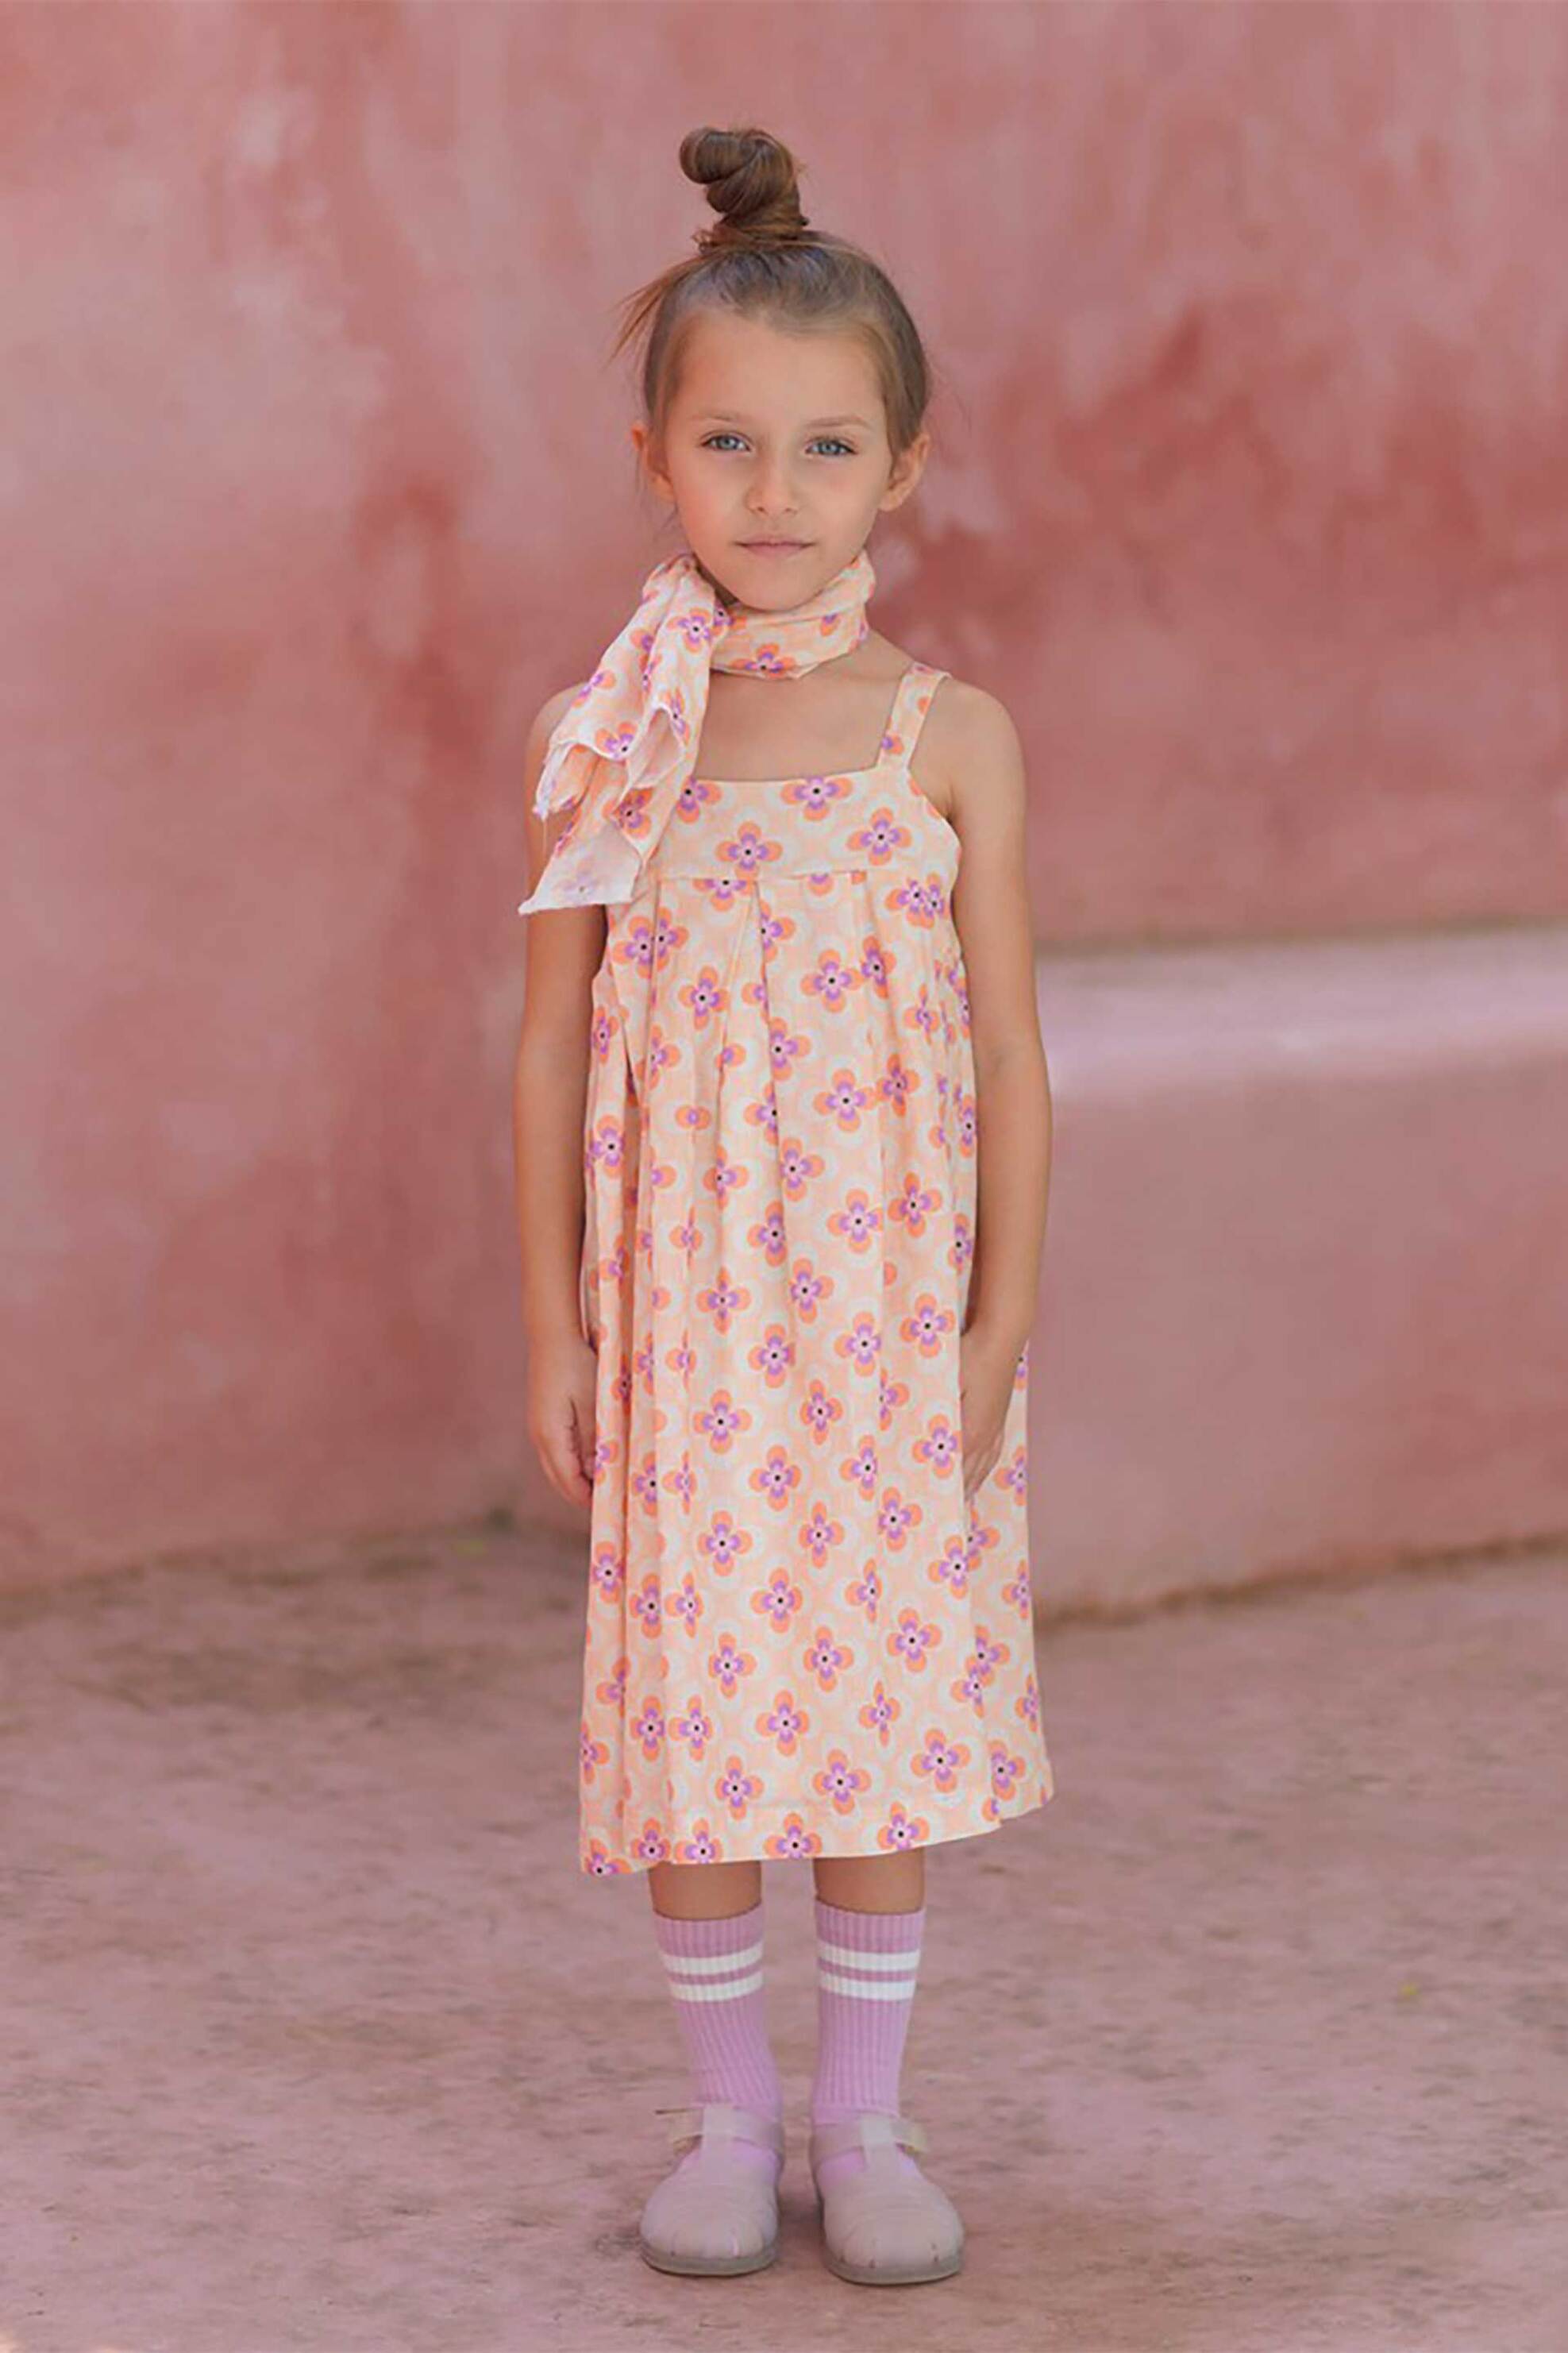 Παιδικά Ρούχα, Παπούτσια & Παιχνίδια > Παιδικά Ρούχα & Αξεσουάρ για Κορίτσια > Παιδικά Φορέματα για Κορίτσια Yell-Oh! παιδικό φόρεμα με τιράντες και print "70s Flowers" - 42090240103 Ροζ